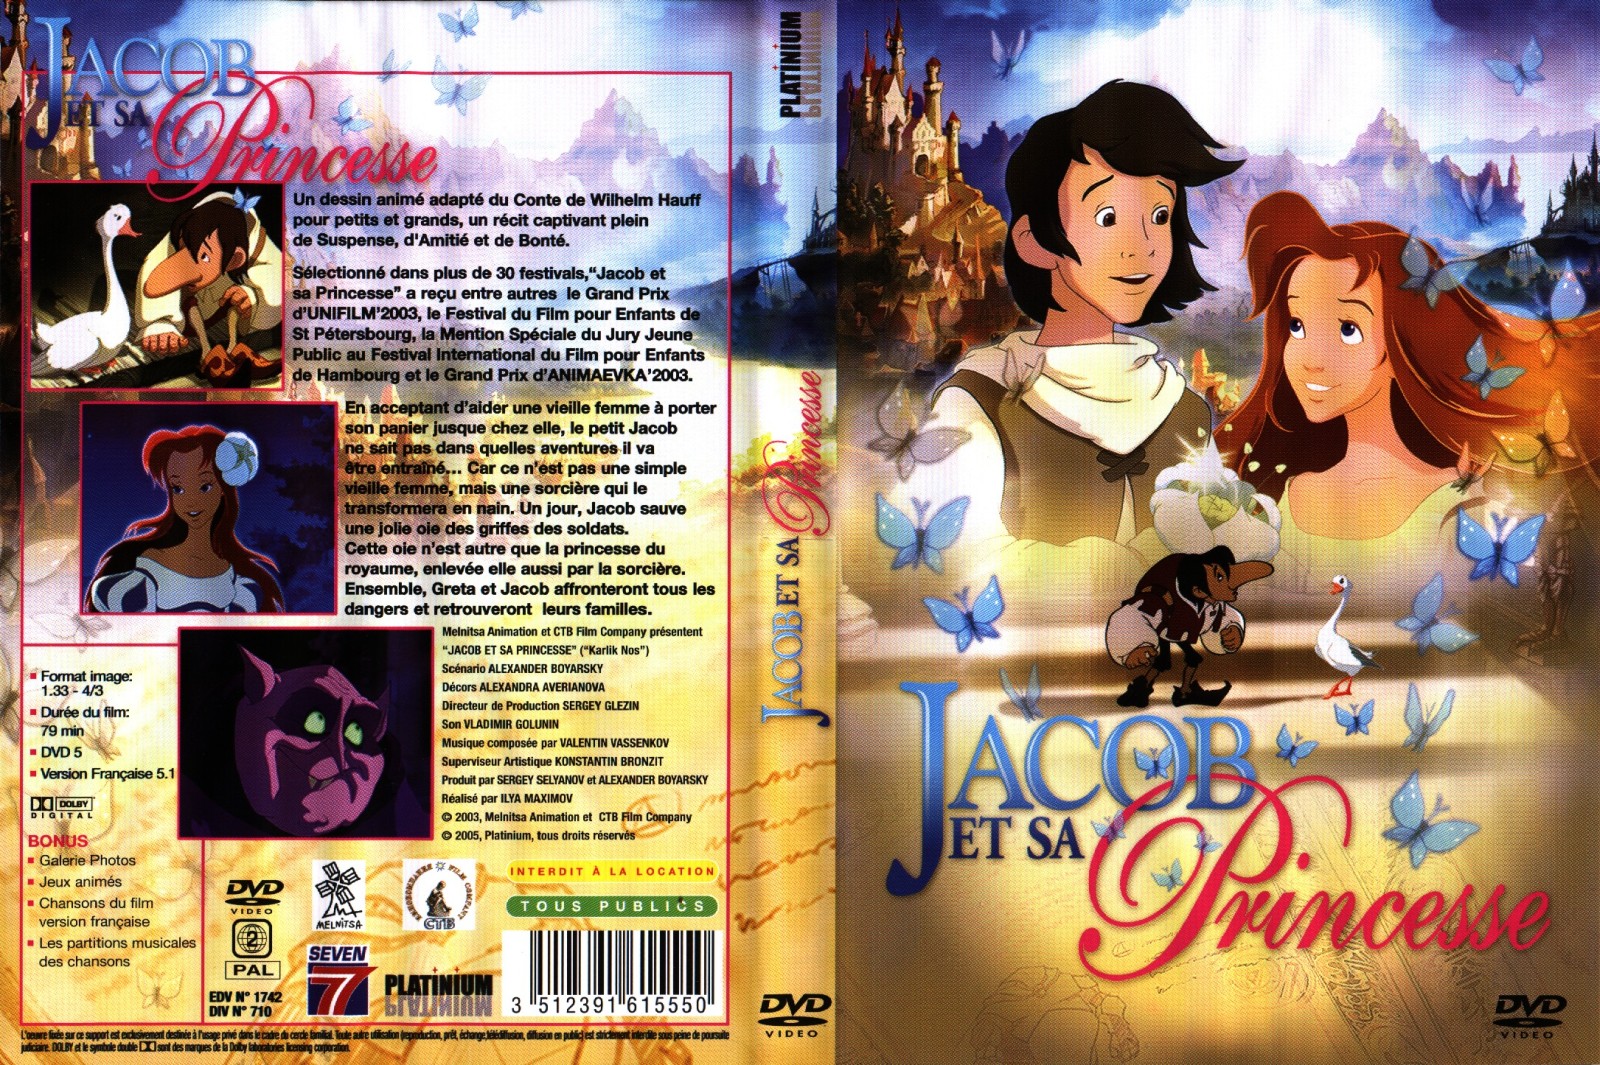 Jaquette DVD Jacob et sa princesse